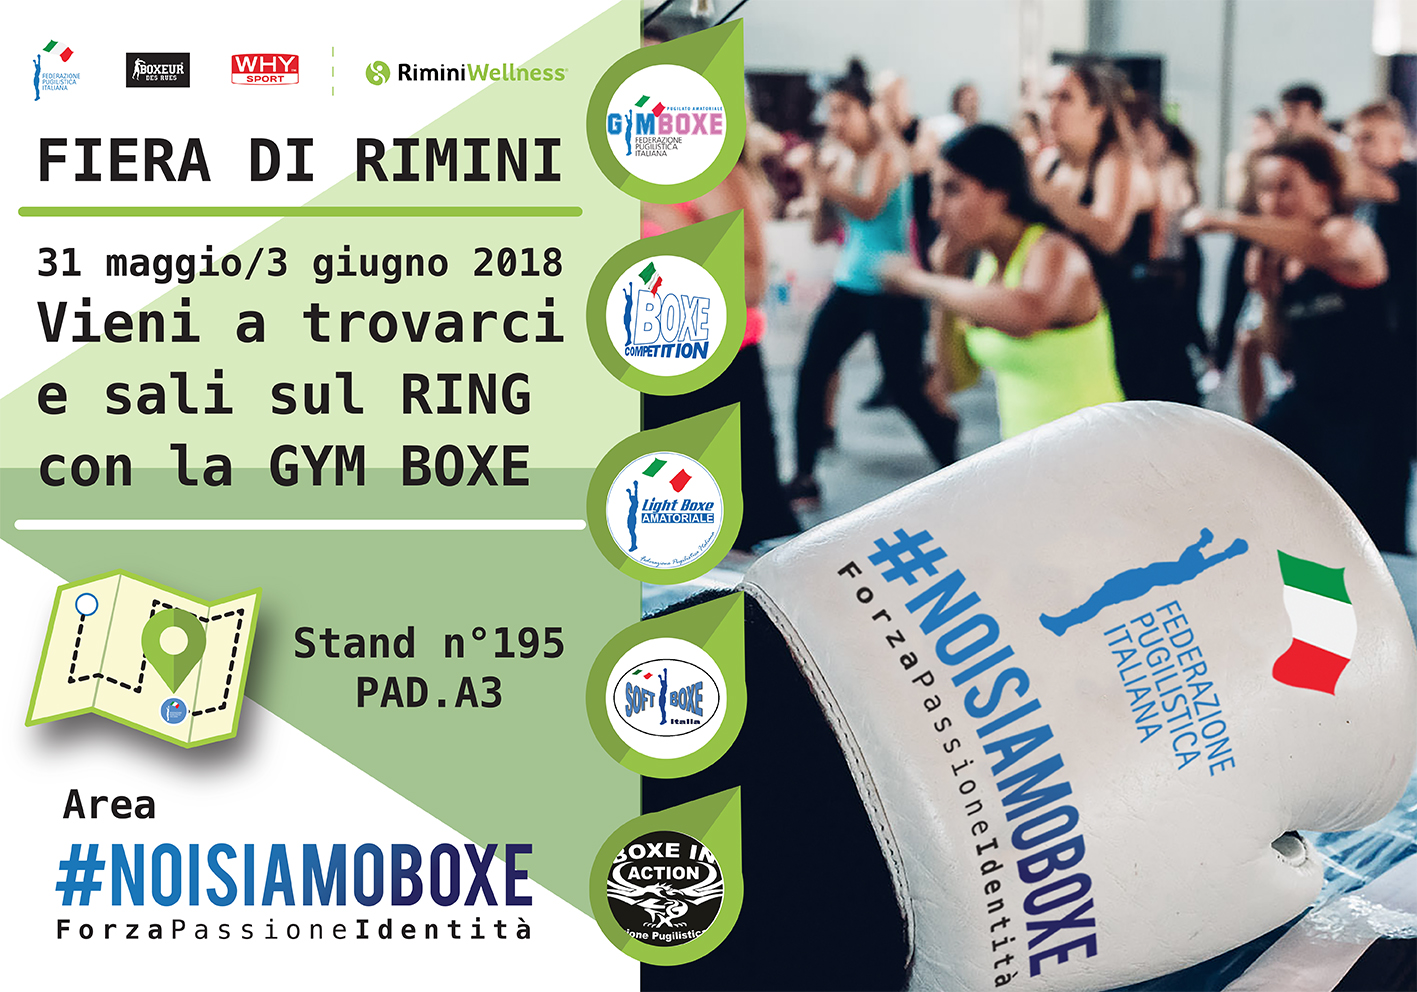 La Gym Boxe ed il Team di SuperChamp a RiminiWellness 2018 per  #NOISIAMOBOXE